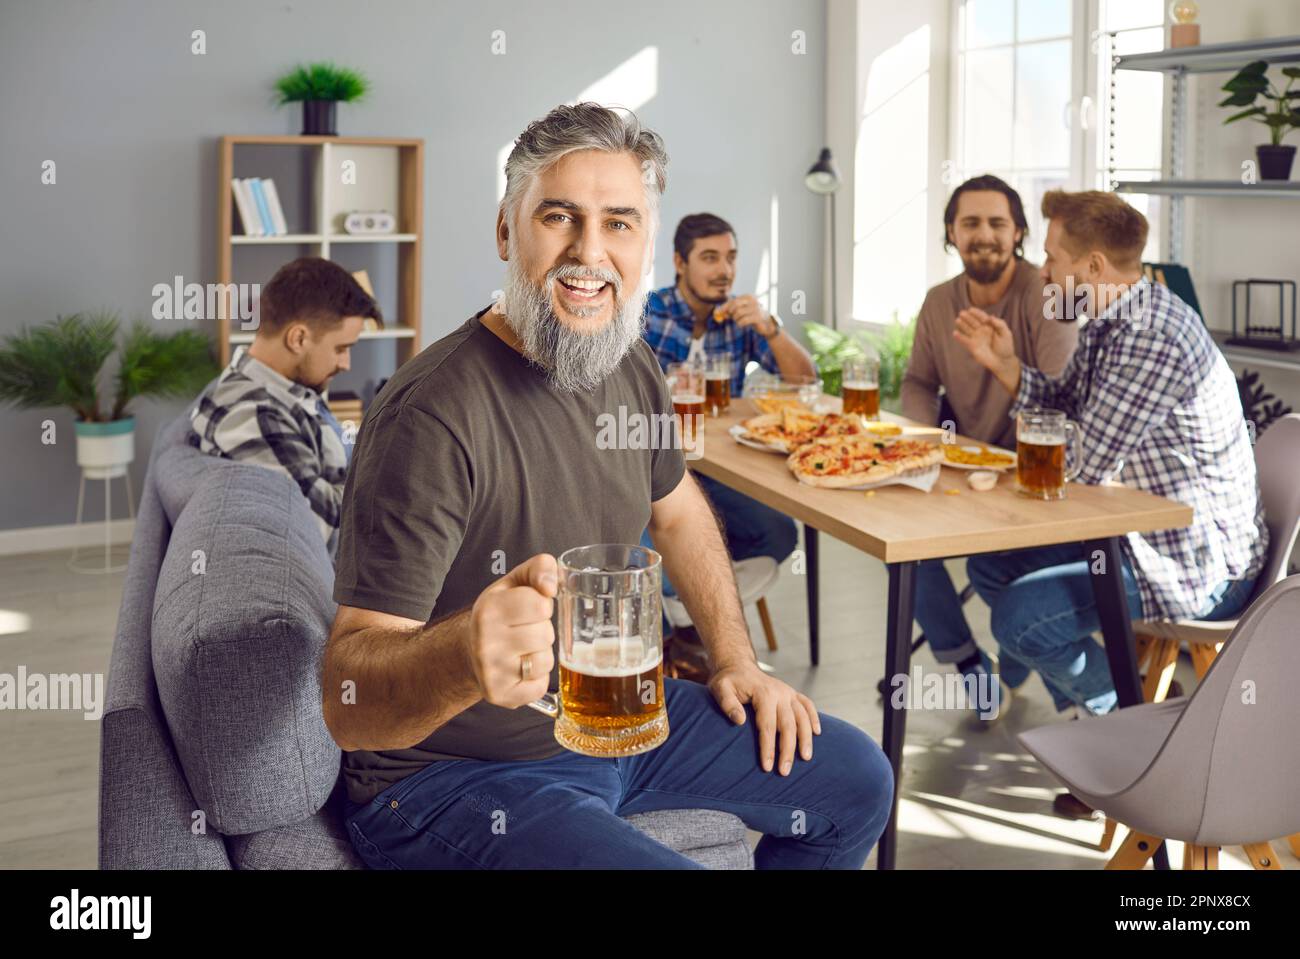 Ritratto dell'uomo bearded che tiene un bicchiere di birra con una compagnia di amici che parlano sullo sfondo. Foto Stock